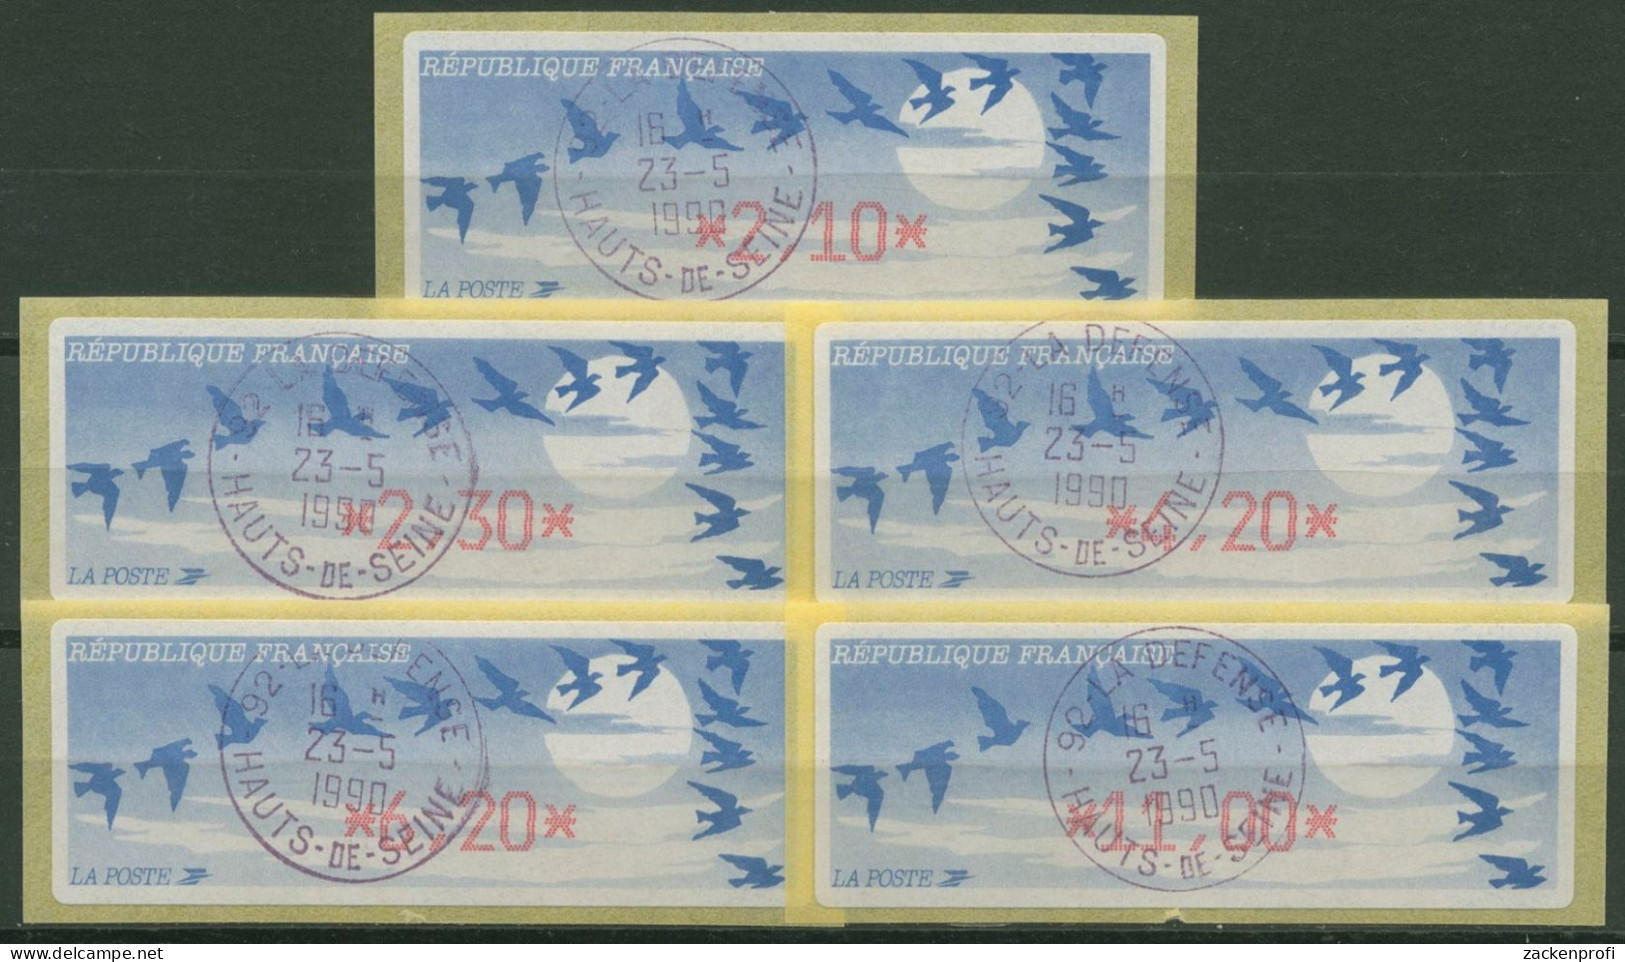 Frankreich ATM 1990 Vogelzug Satz 5 Werte ATM 11.1 B S Gestempelt - 1985 « Carrier » Papier